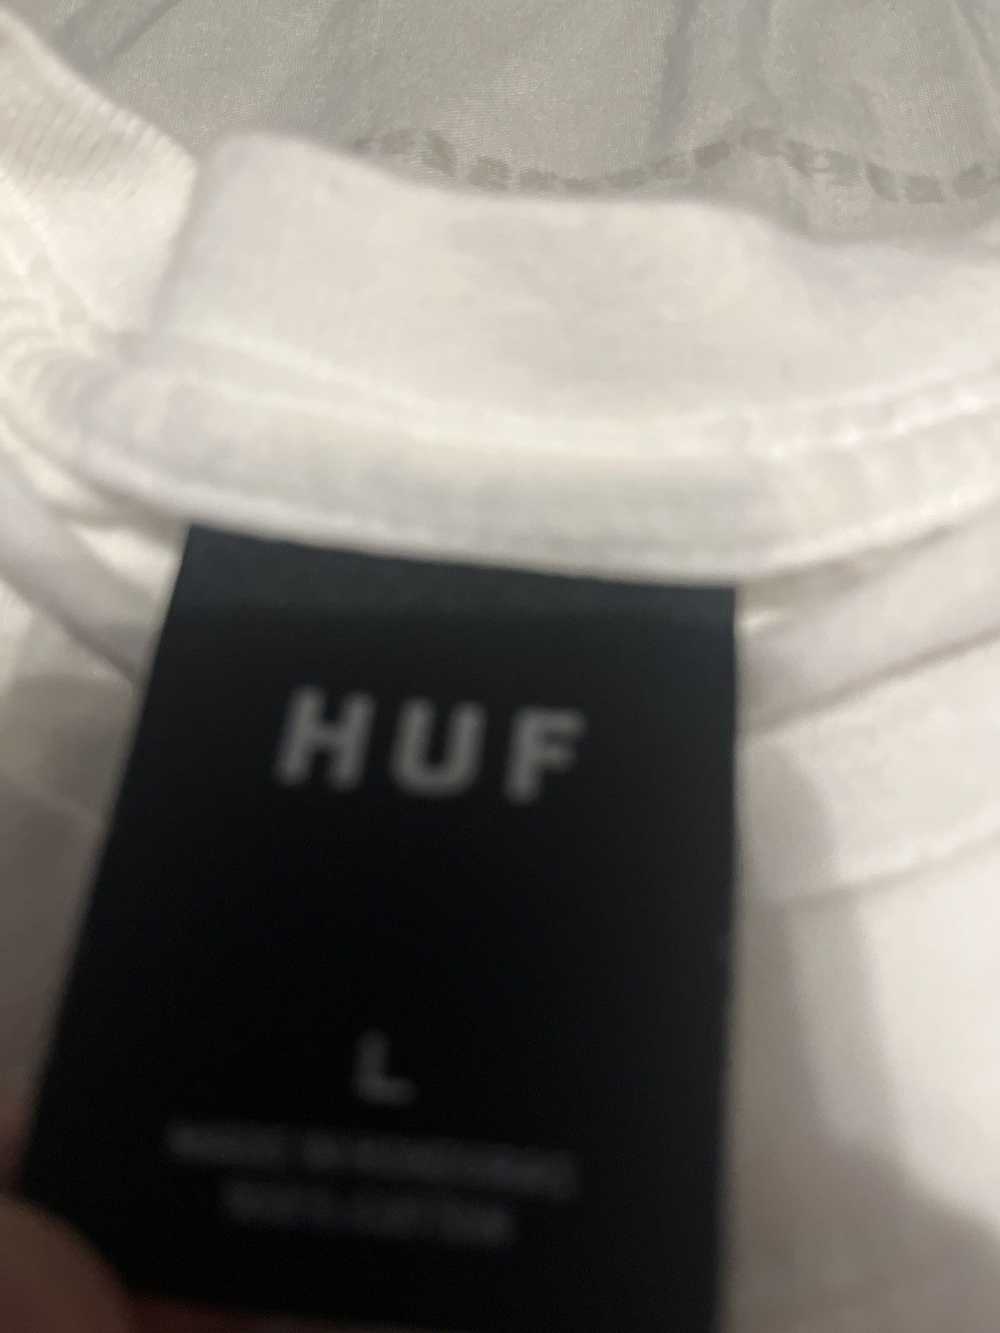 Huf Huf alien t shirt - image 2